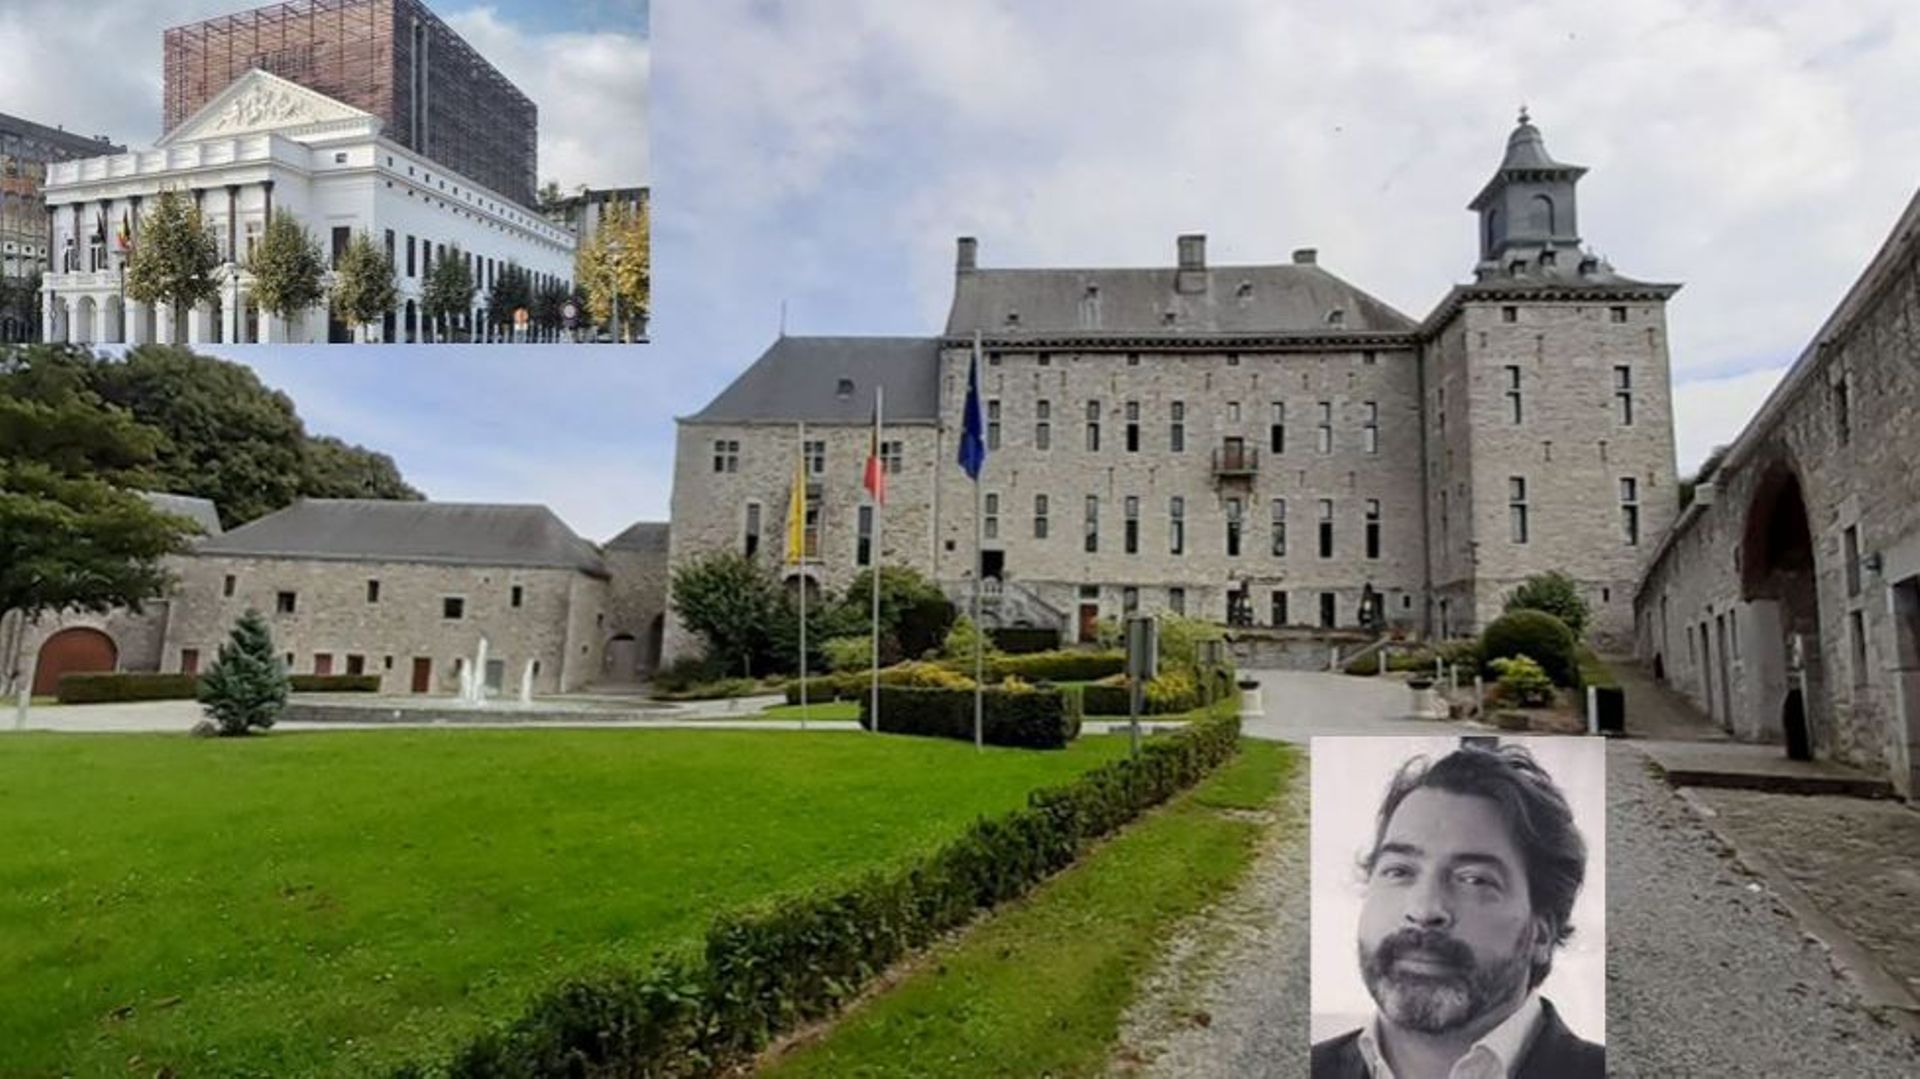 Le château de Harzé sera vendu. L’Opéra royal de Wallonie (parmi d’autres) devrait voir ses subsides diminuer. C’est ce qu’a confirmé le député provincial – président Luc Gillard.